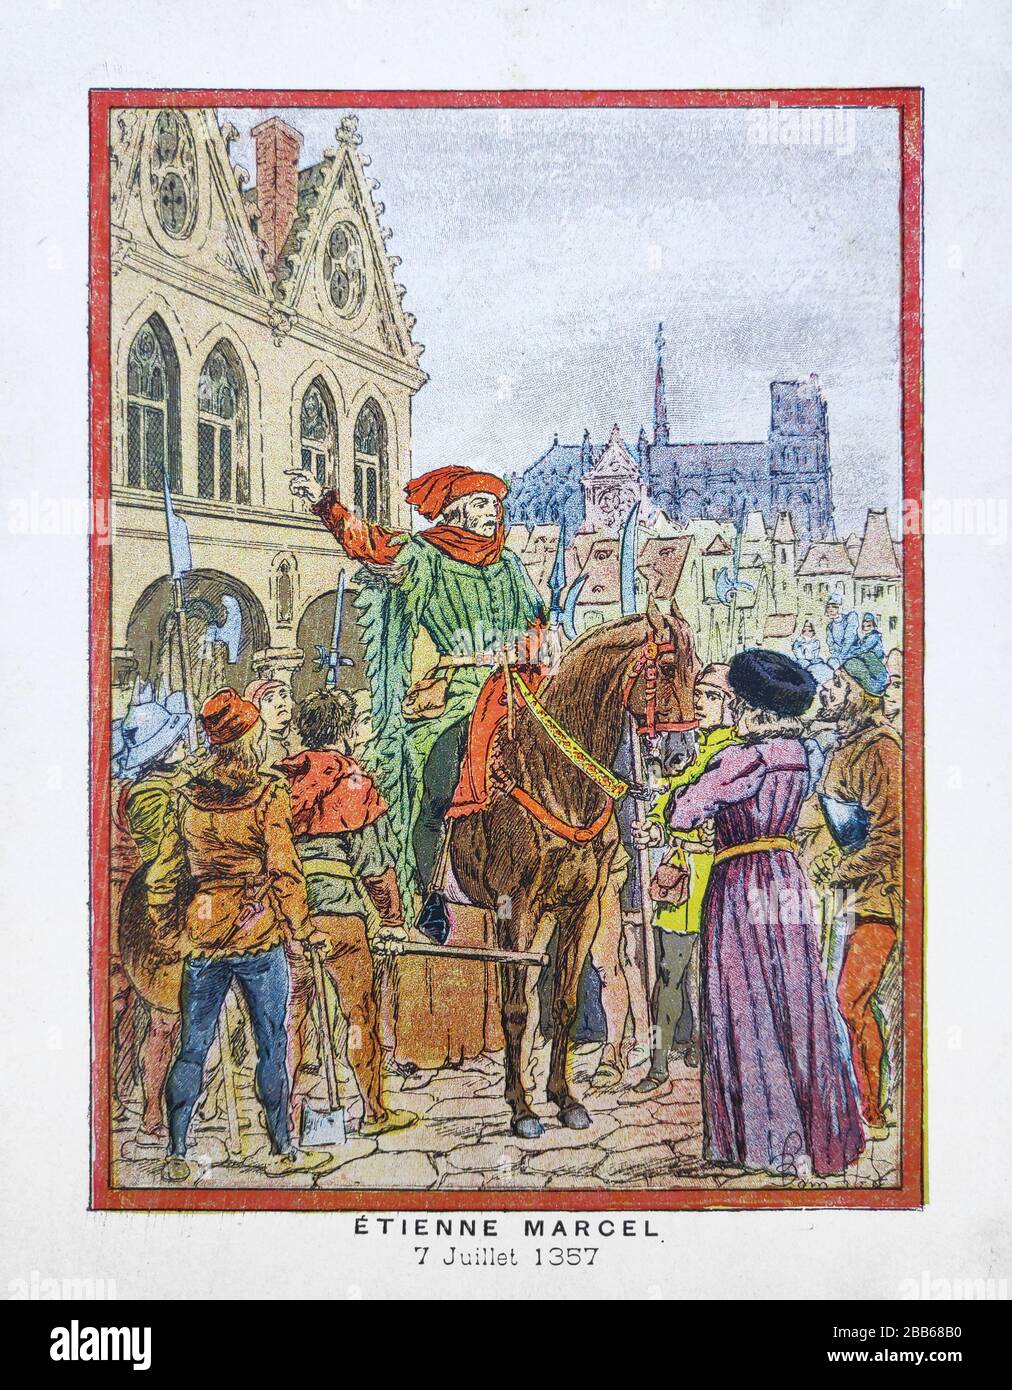 Alte Illustration über Etienne Marcel von 'Louis Bombled' gedruckt im späten 19. Jahrhundert. Stockfoto